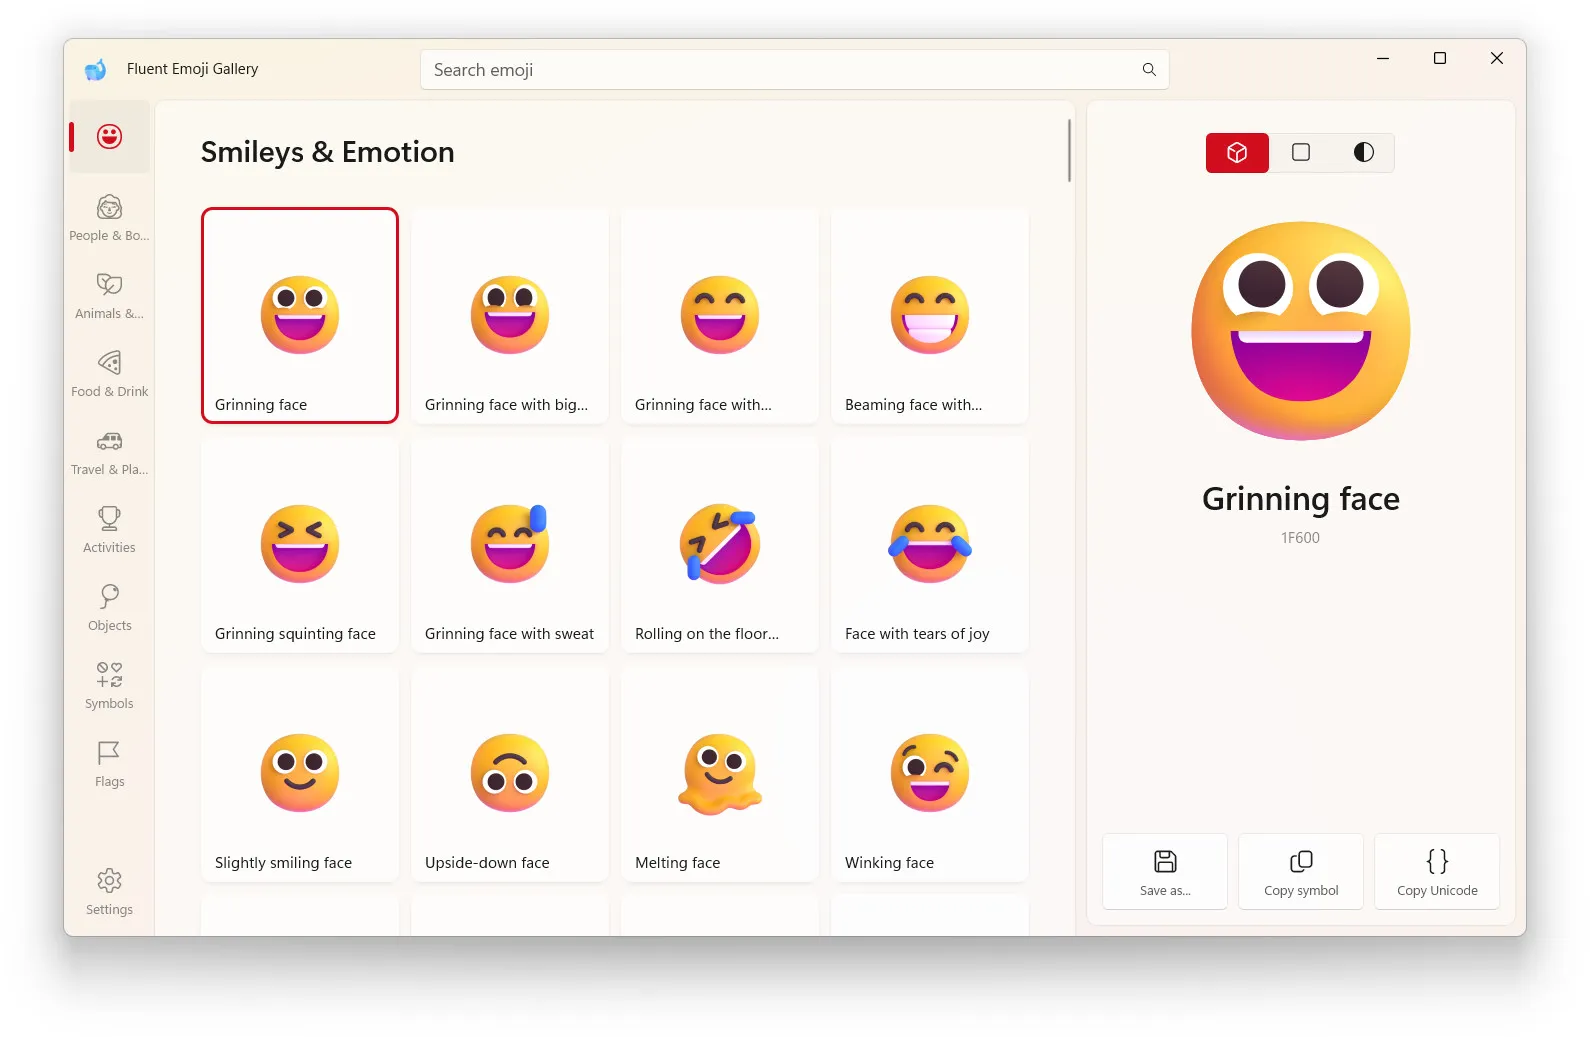 Zrzut ekranu aplikacji Fluent Emoji Gallery dla systemu Windows